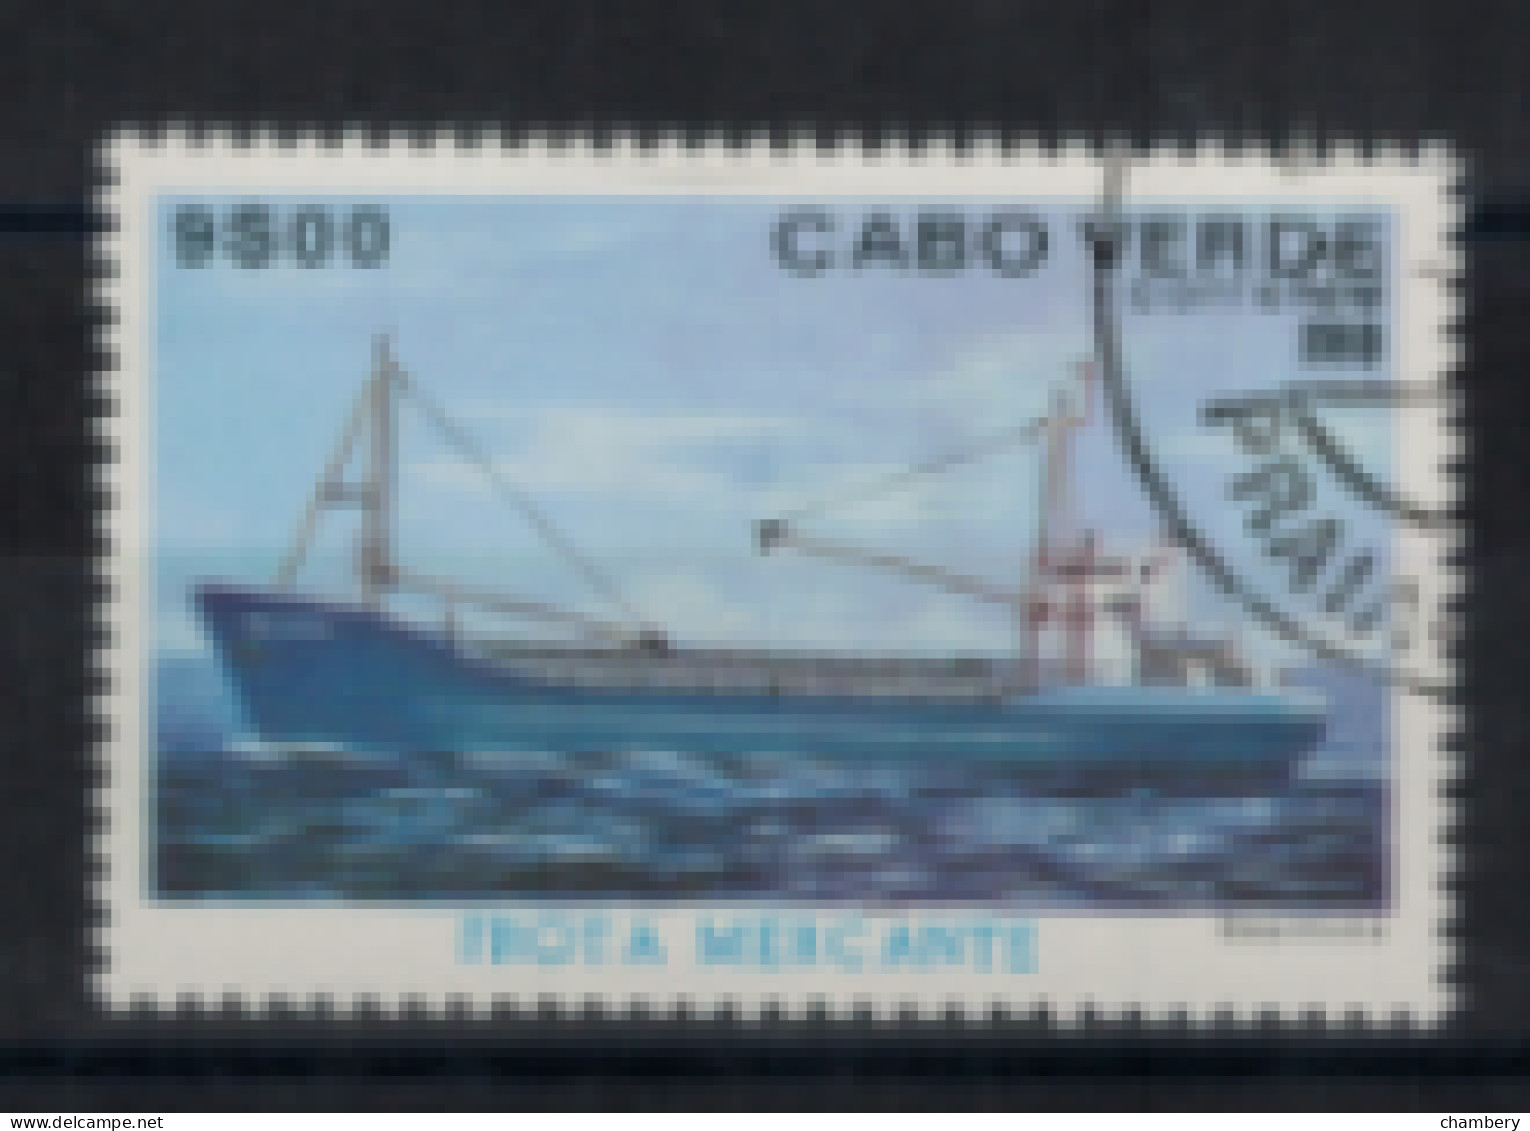 Cap Vert - "Flote Marchande : Bou Visten" - Oblitéré N° 434 De 1980 - Cape Verde